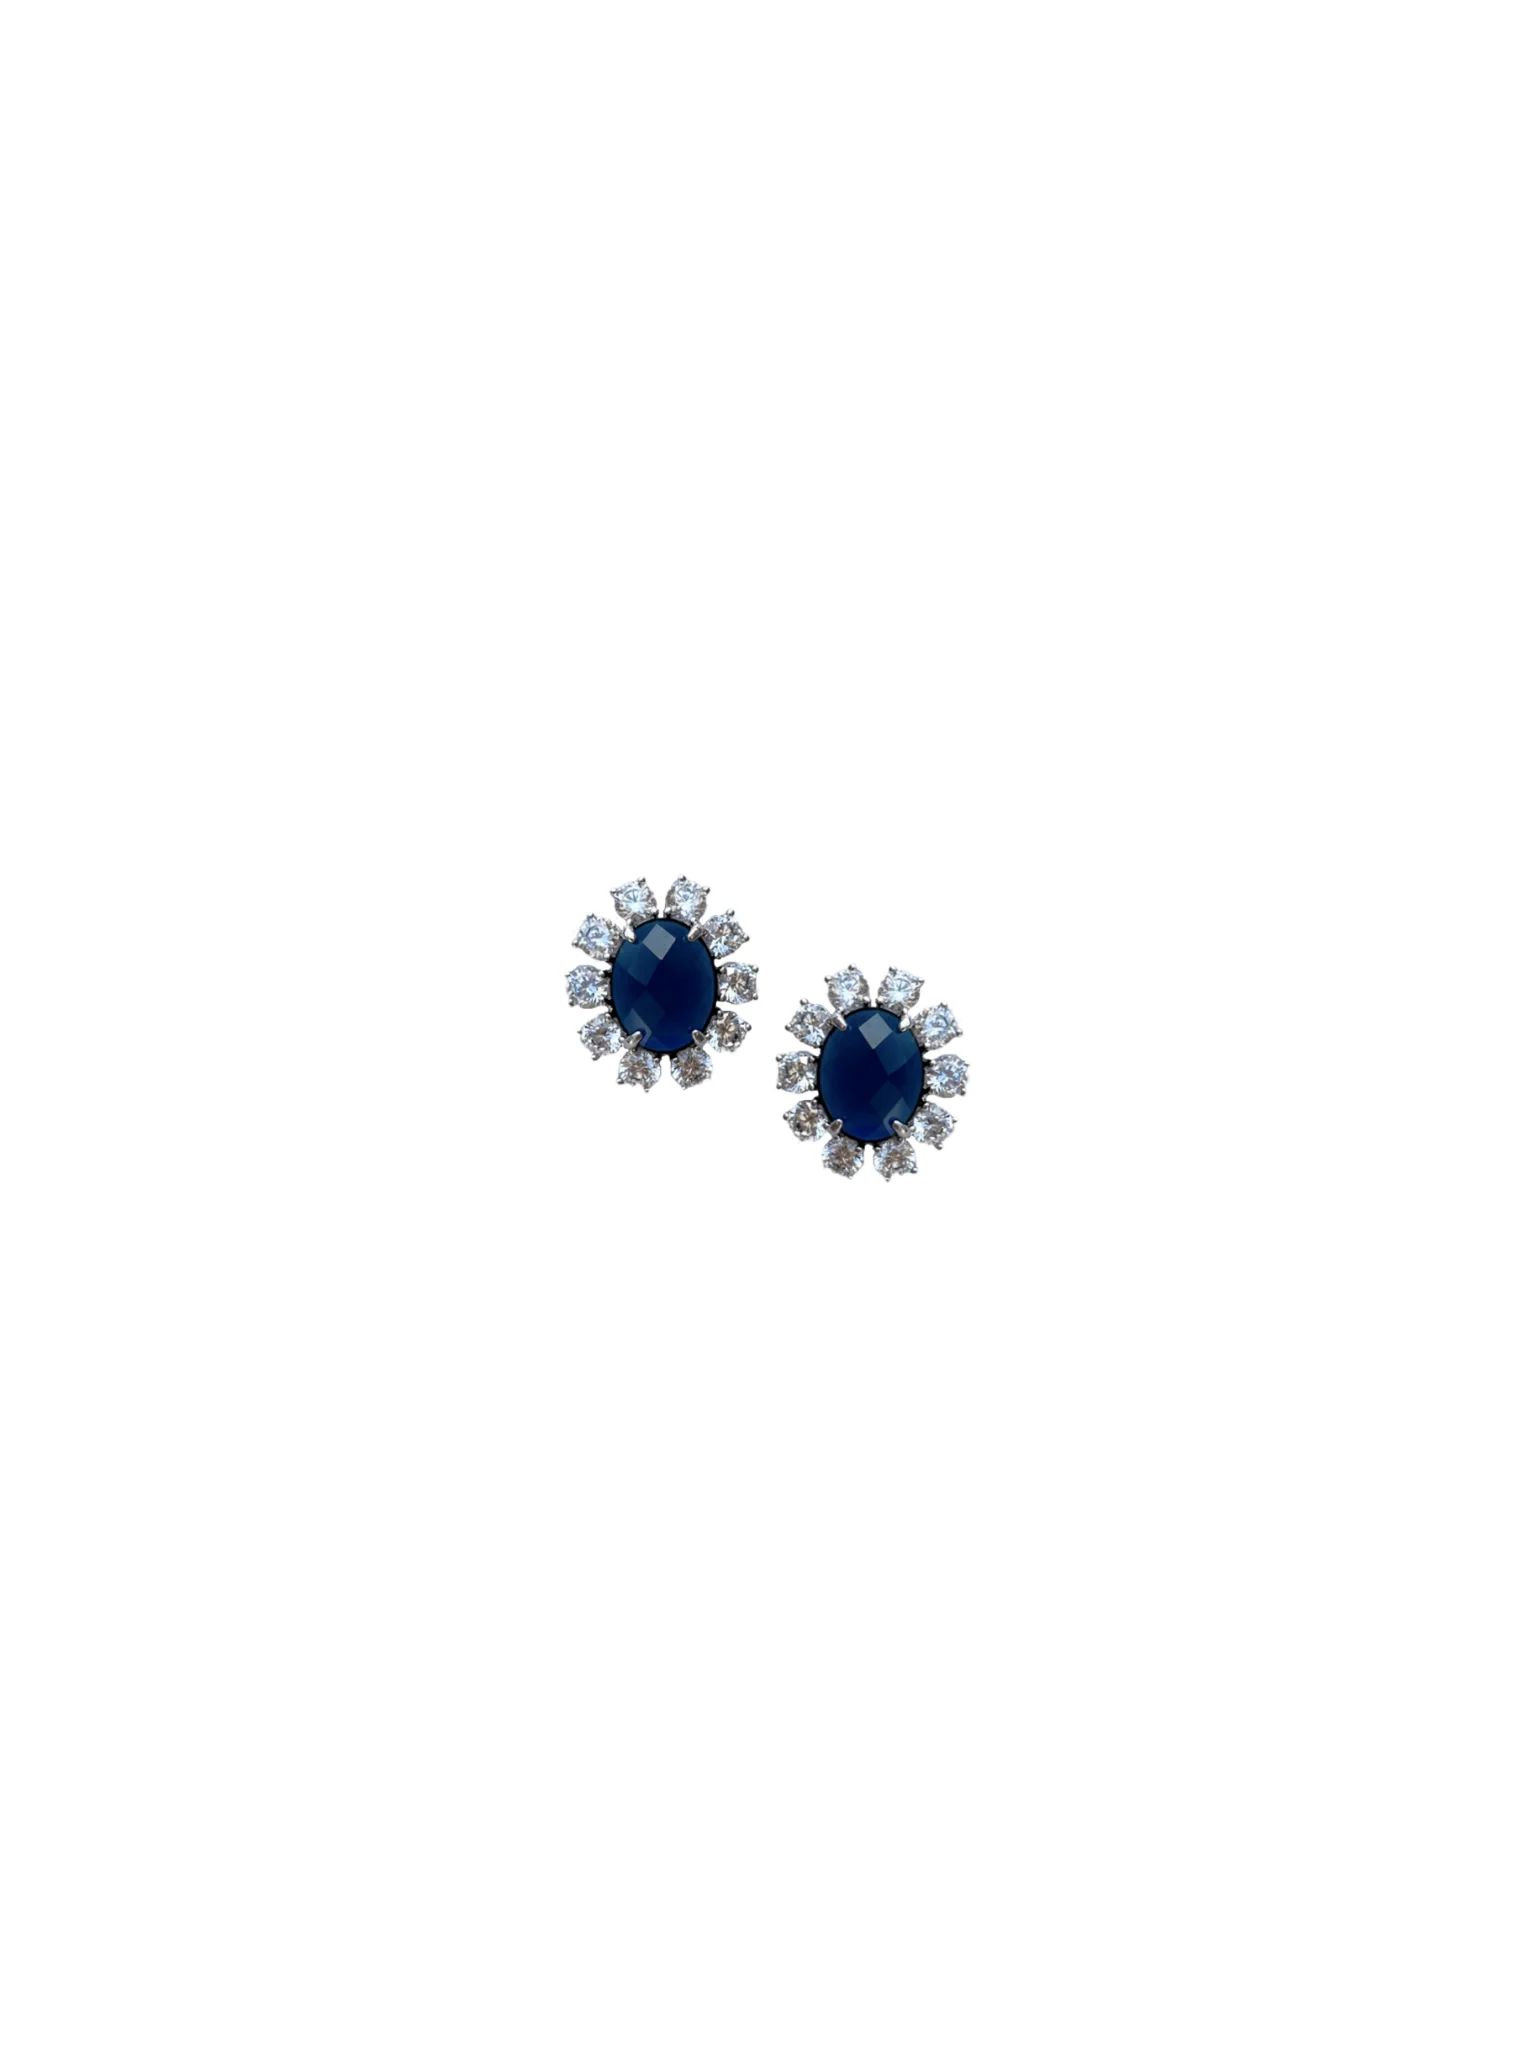 London Blue Studs | Nicola Bathie Jewelry